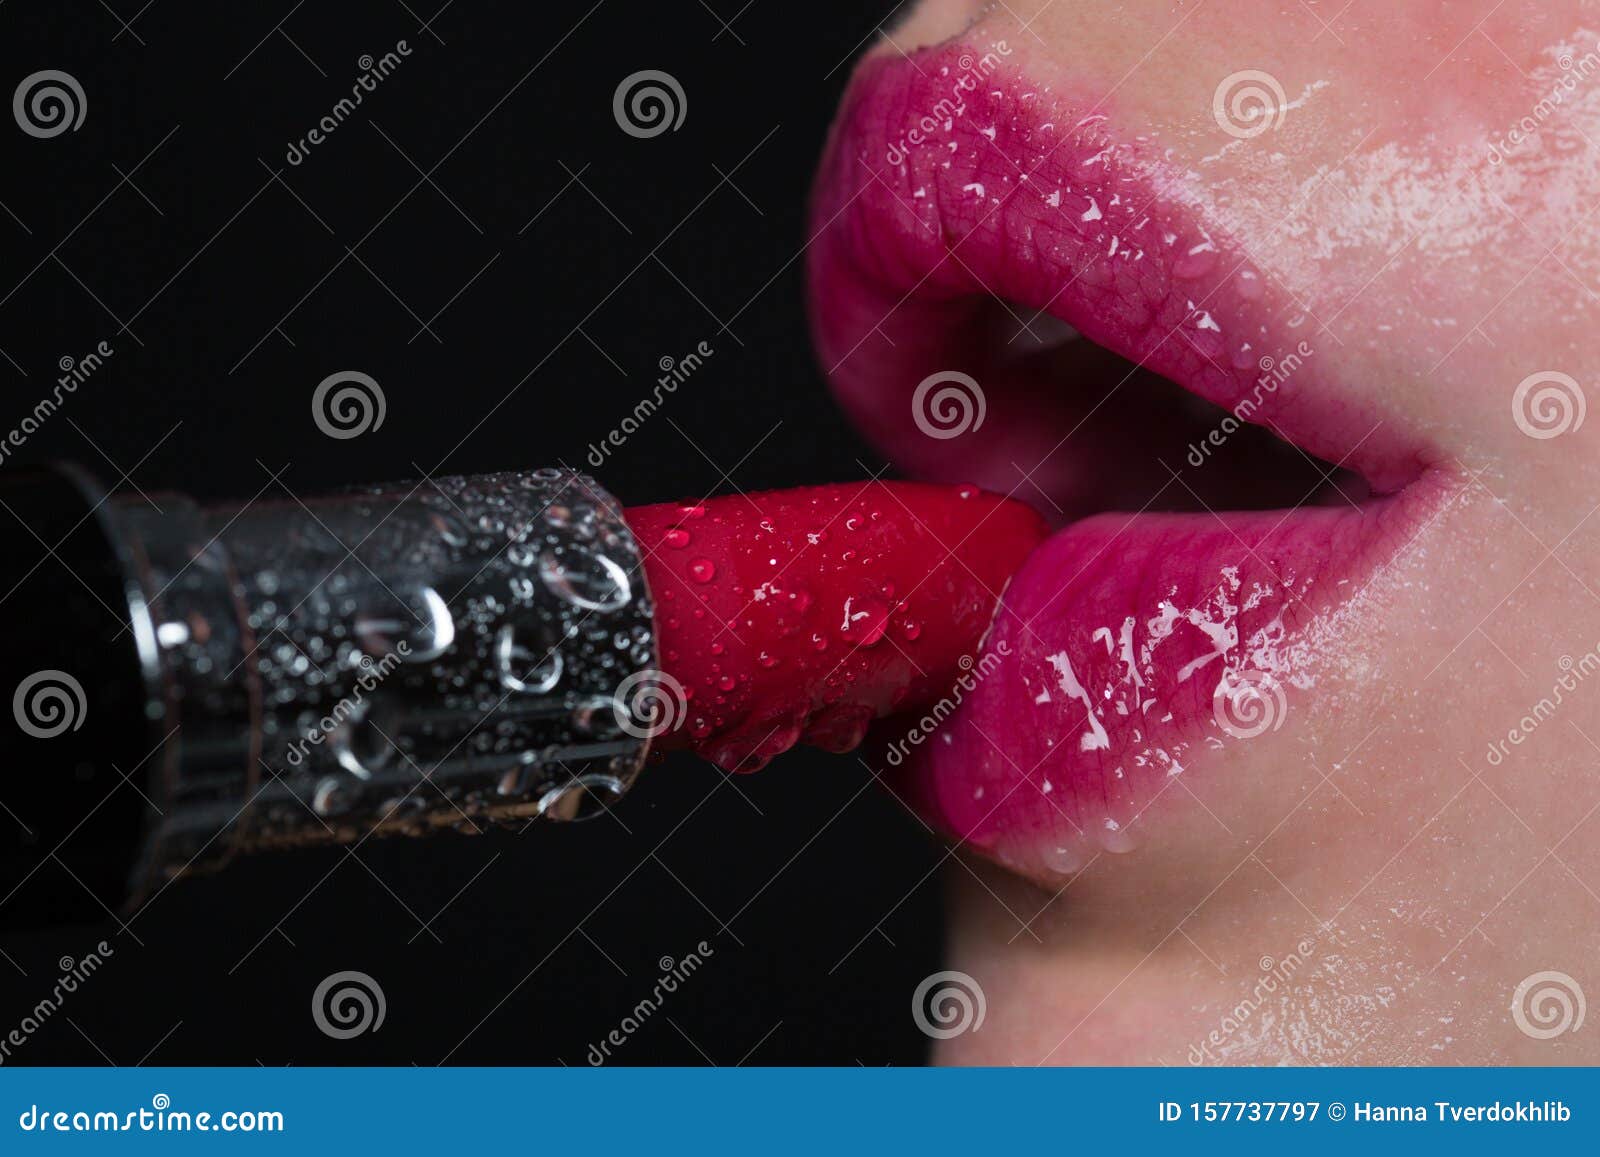 魅力的口红与性感女性的嘴唇湿唇和口红 有水滴 激情 粉唇和库存图片 图片包括有